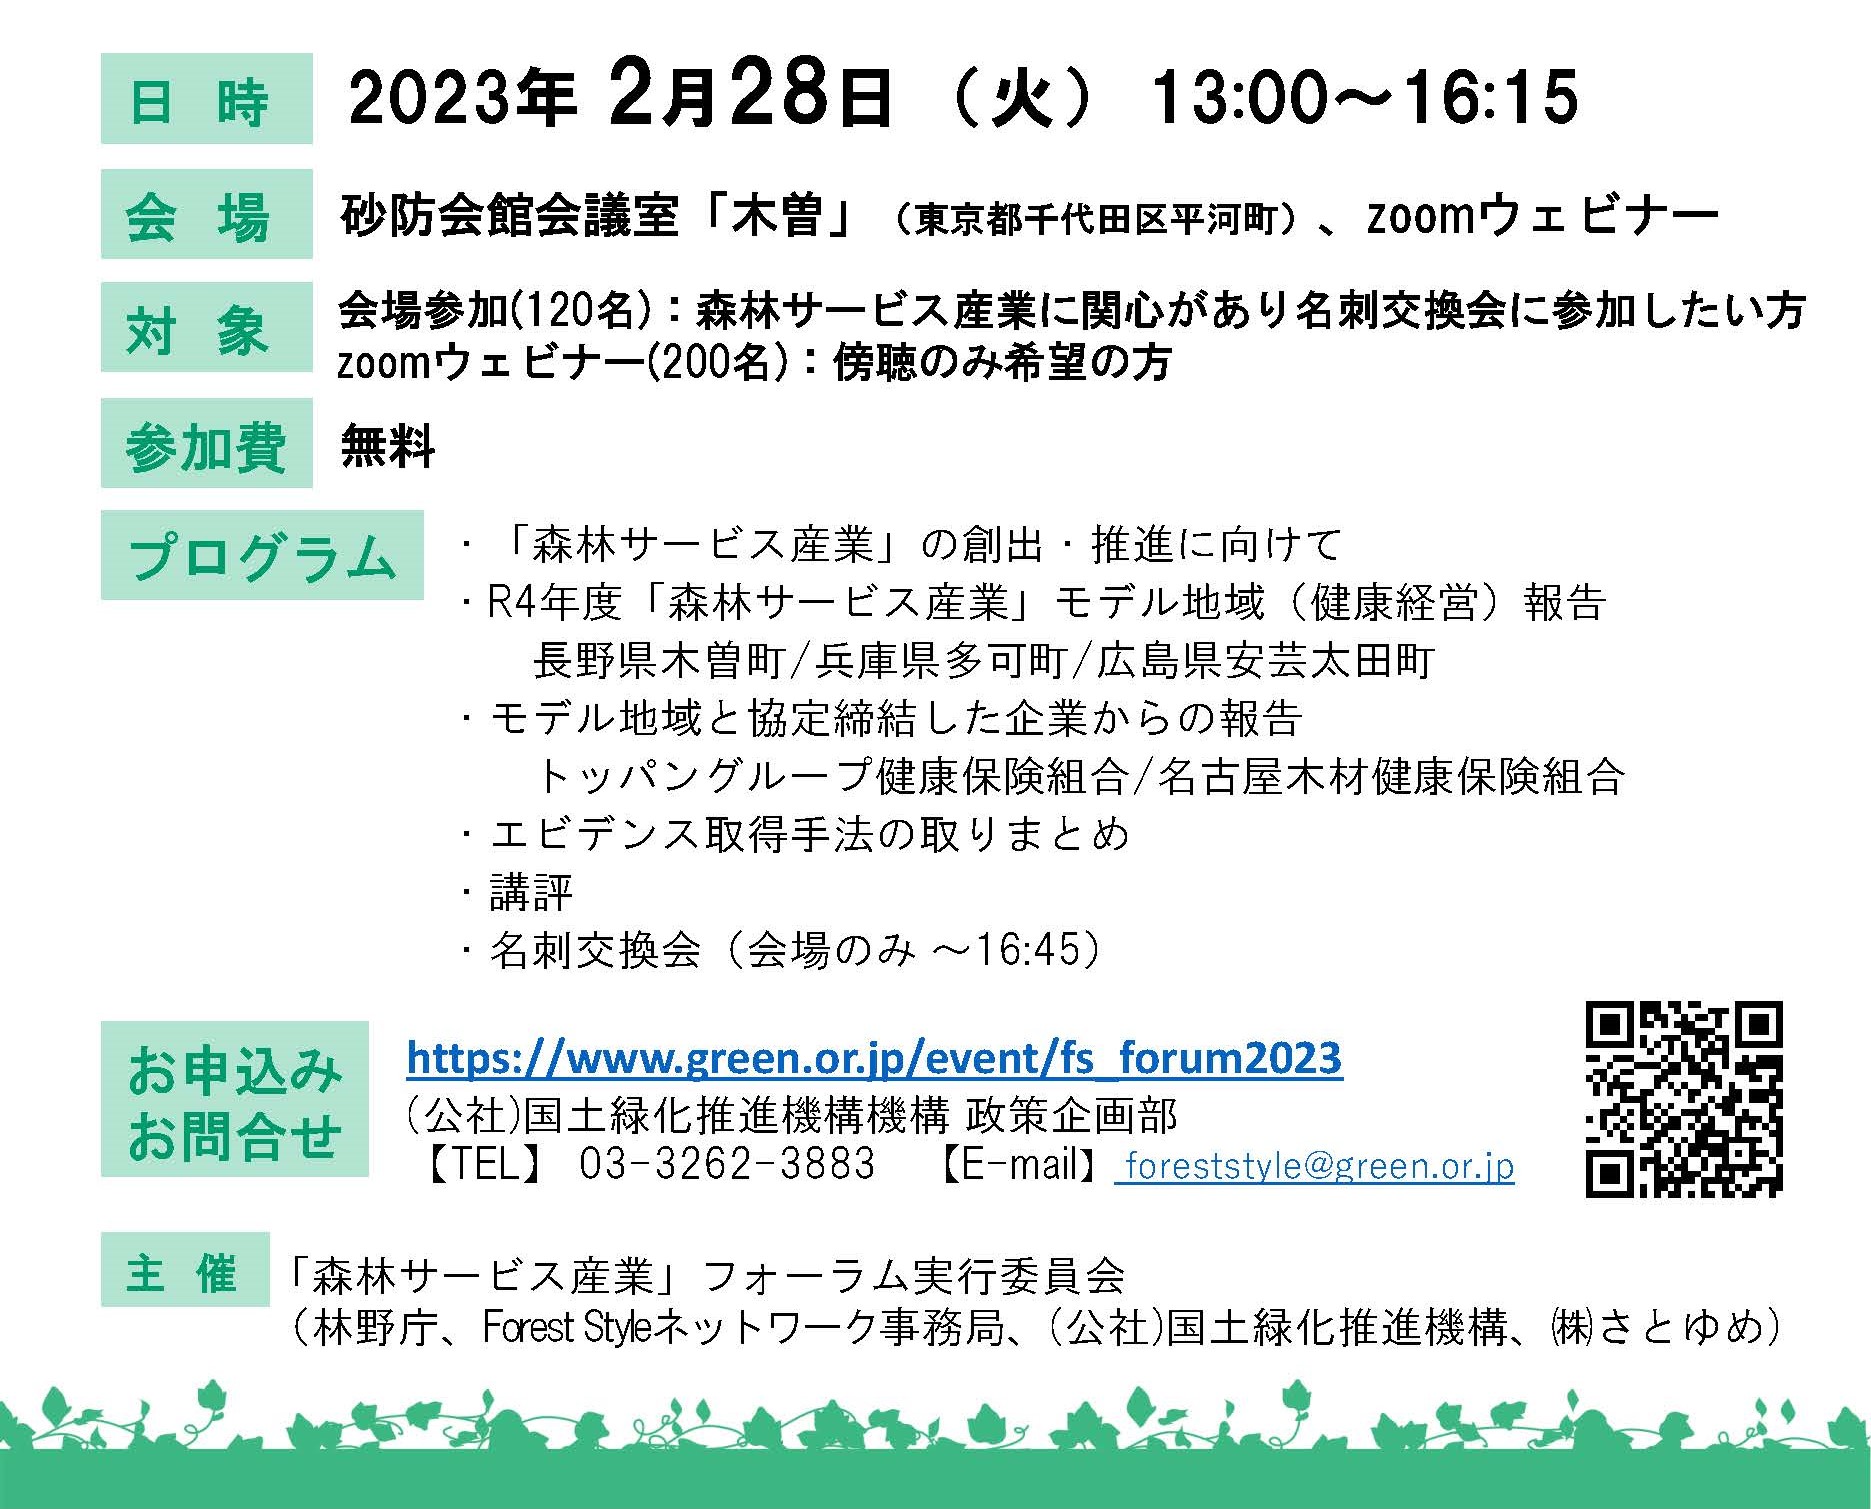 森林サービス産業フォーラム2023が開催されます(2/28)